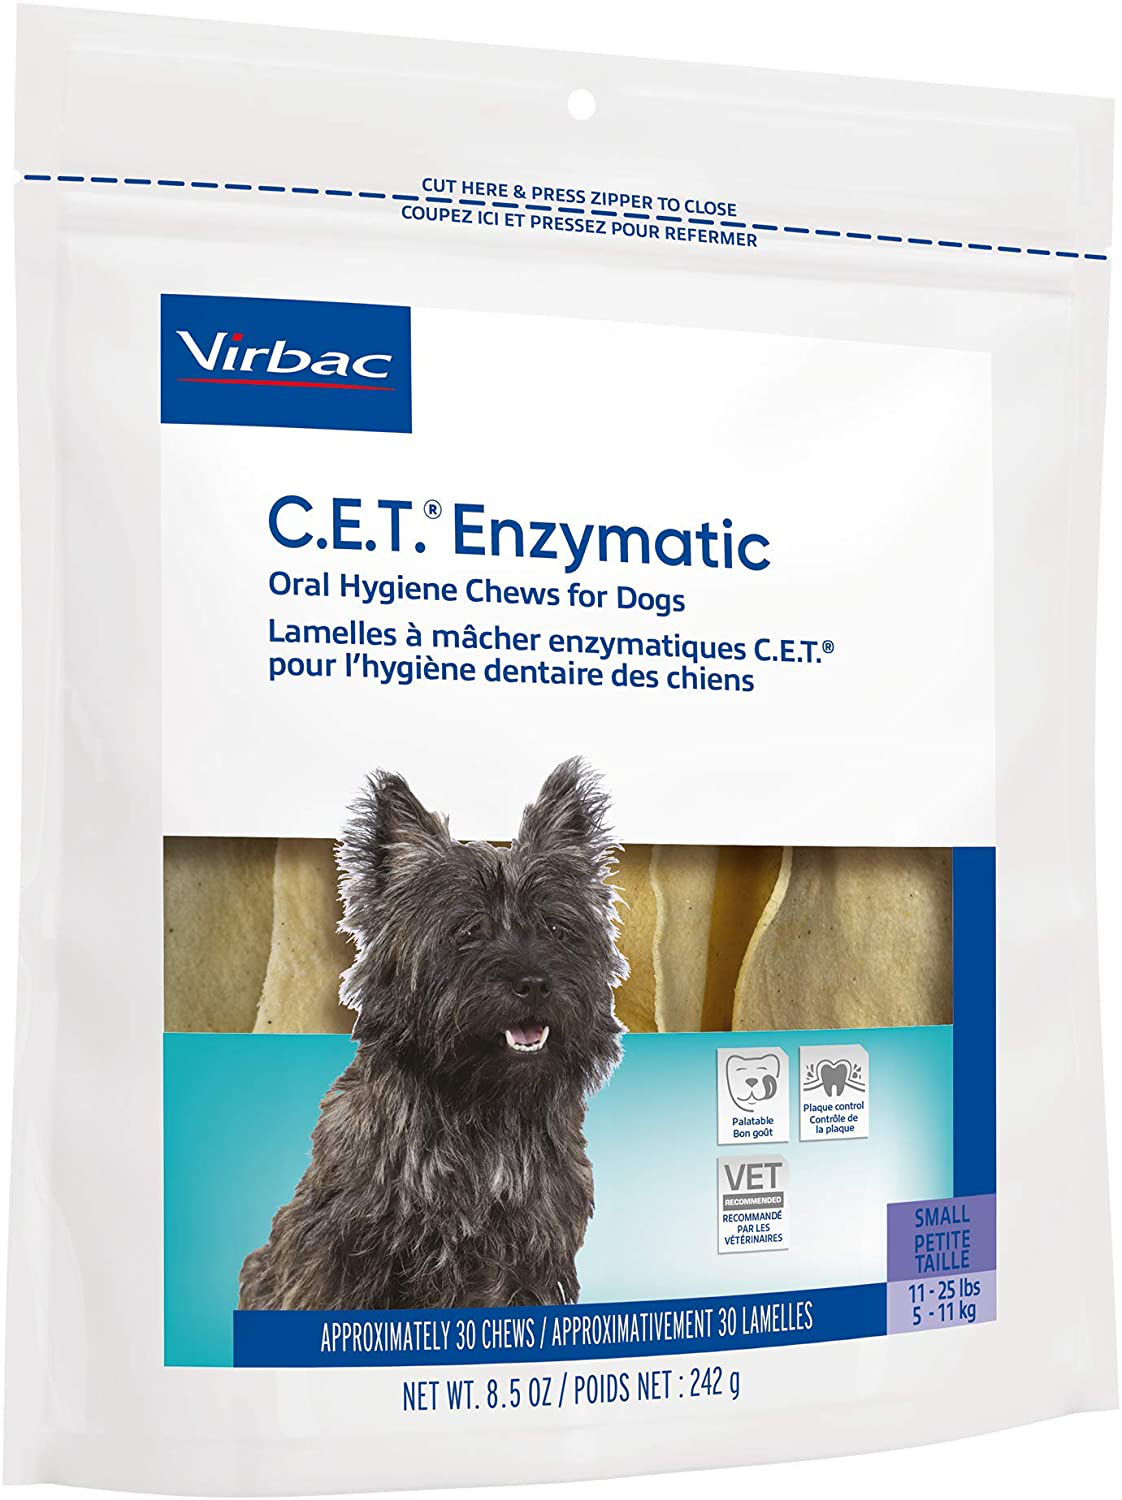 Virbac CET Enzymatic Oral Hygiene Chews for Dogs Animals & Pet Supplies > Pet Supplies > Dog Supplies > Dog Treats Virbac Animal Health   